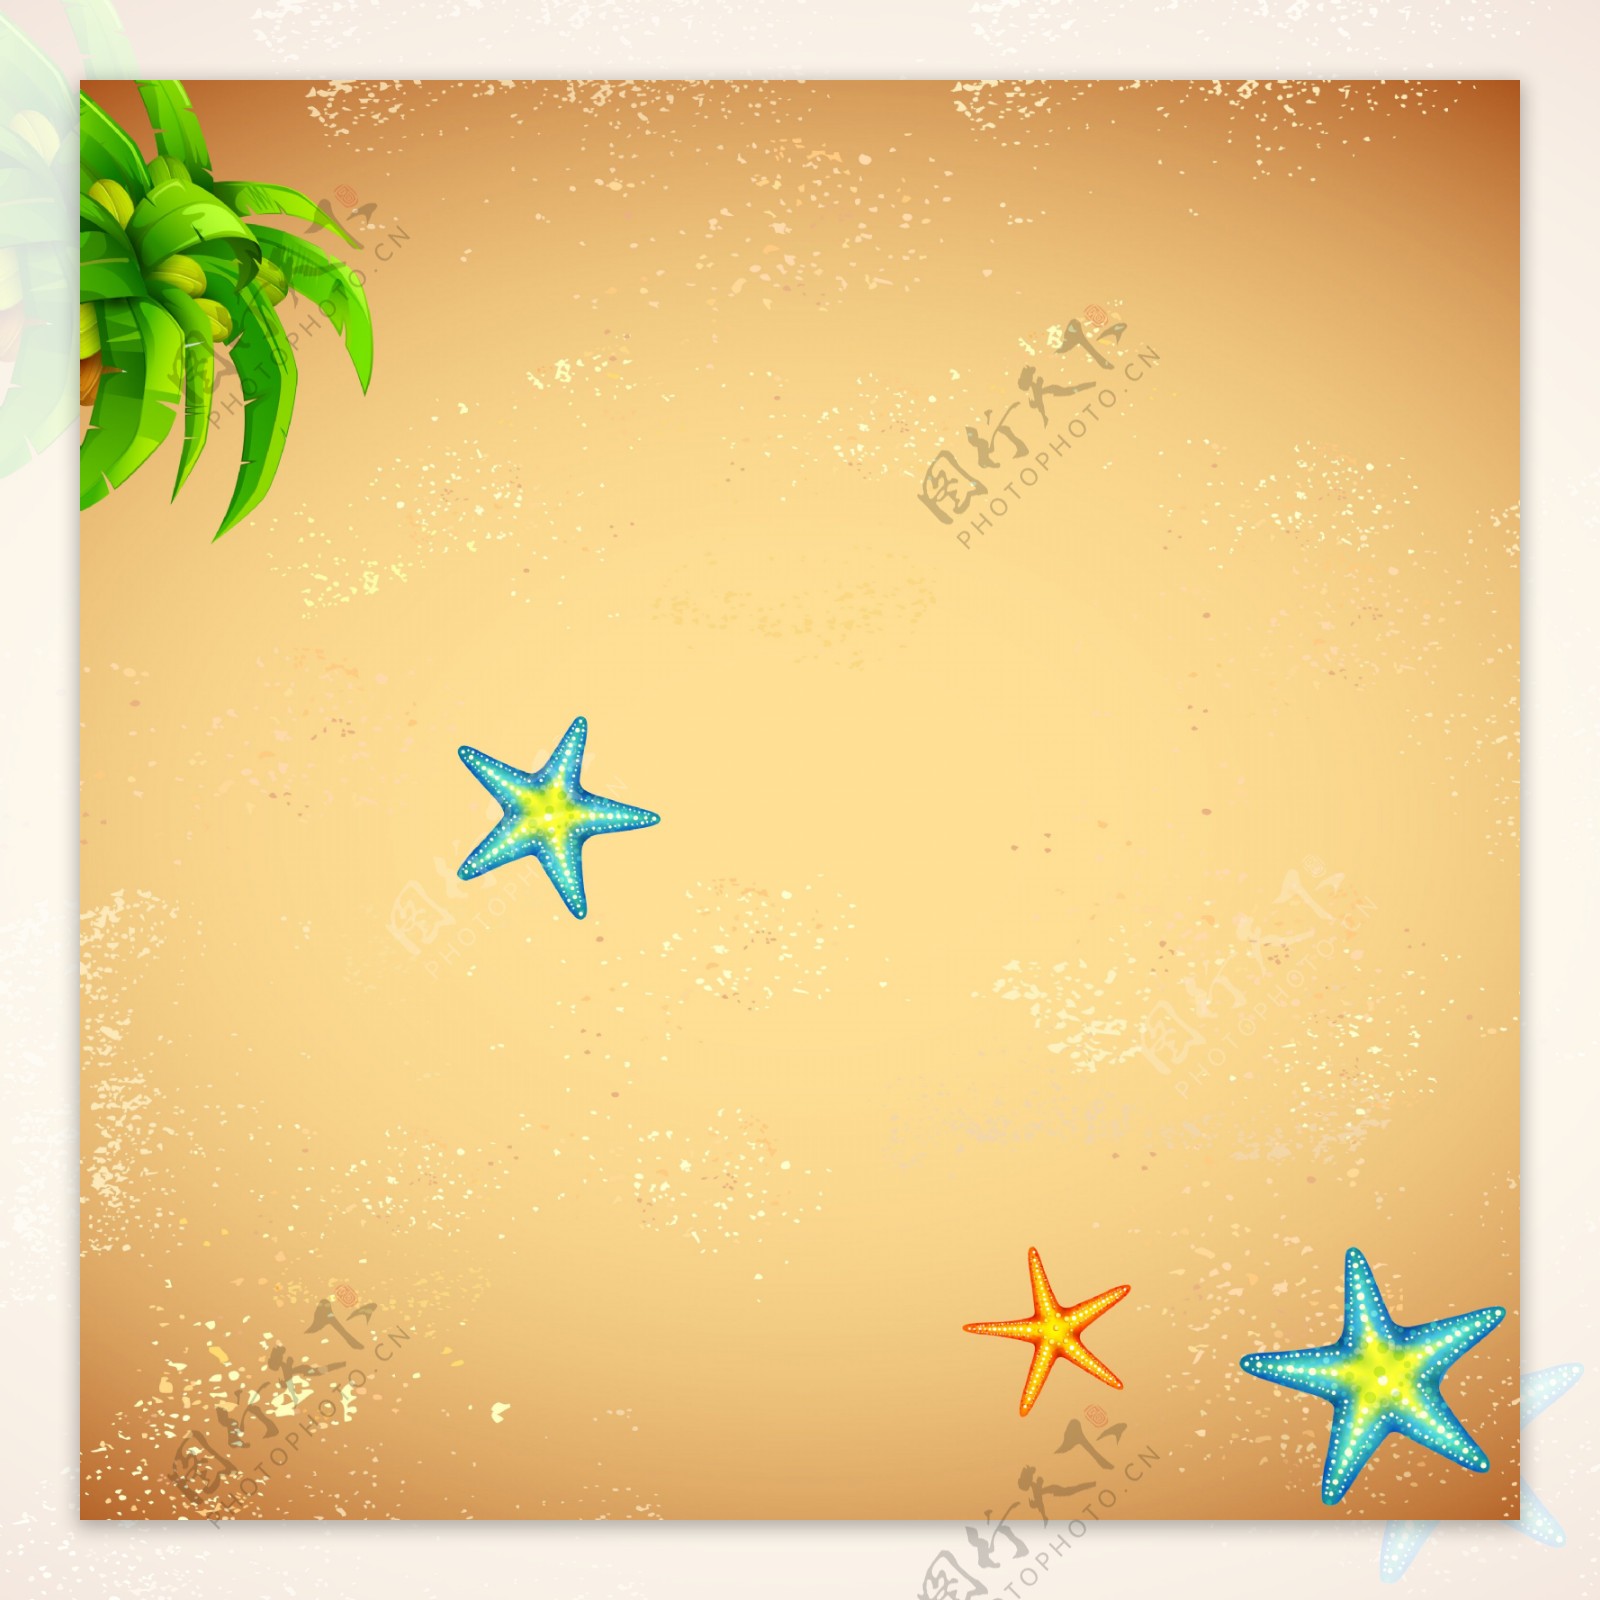 沙滩海星背景